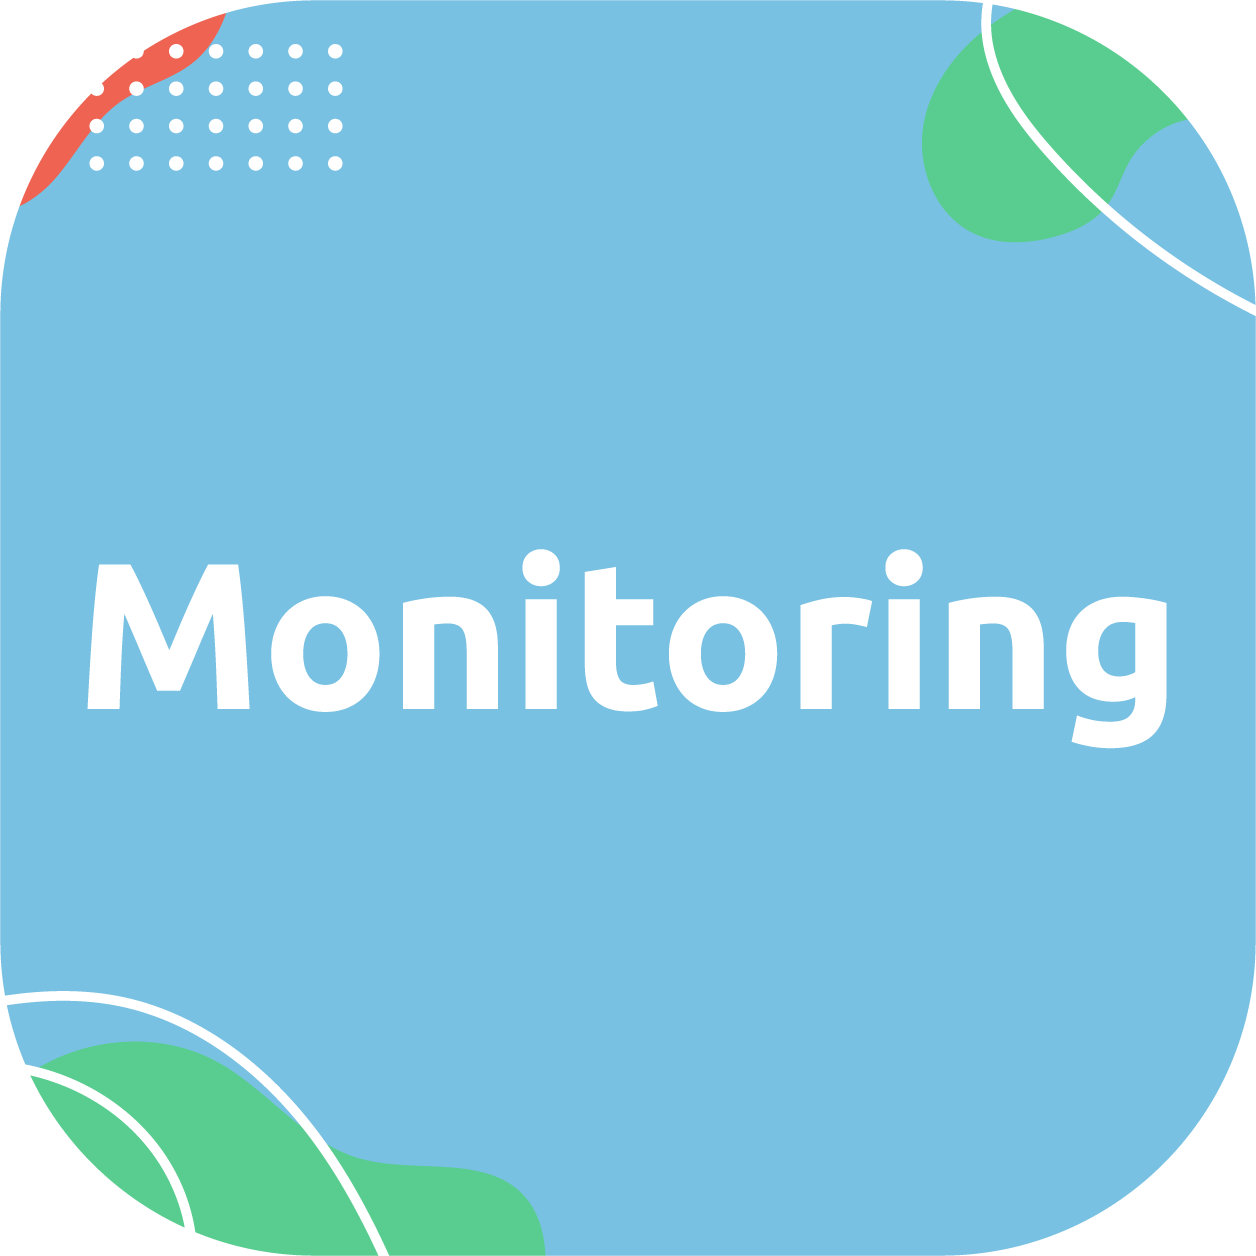 100-Monitoring-kafelek-2